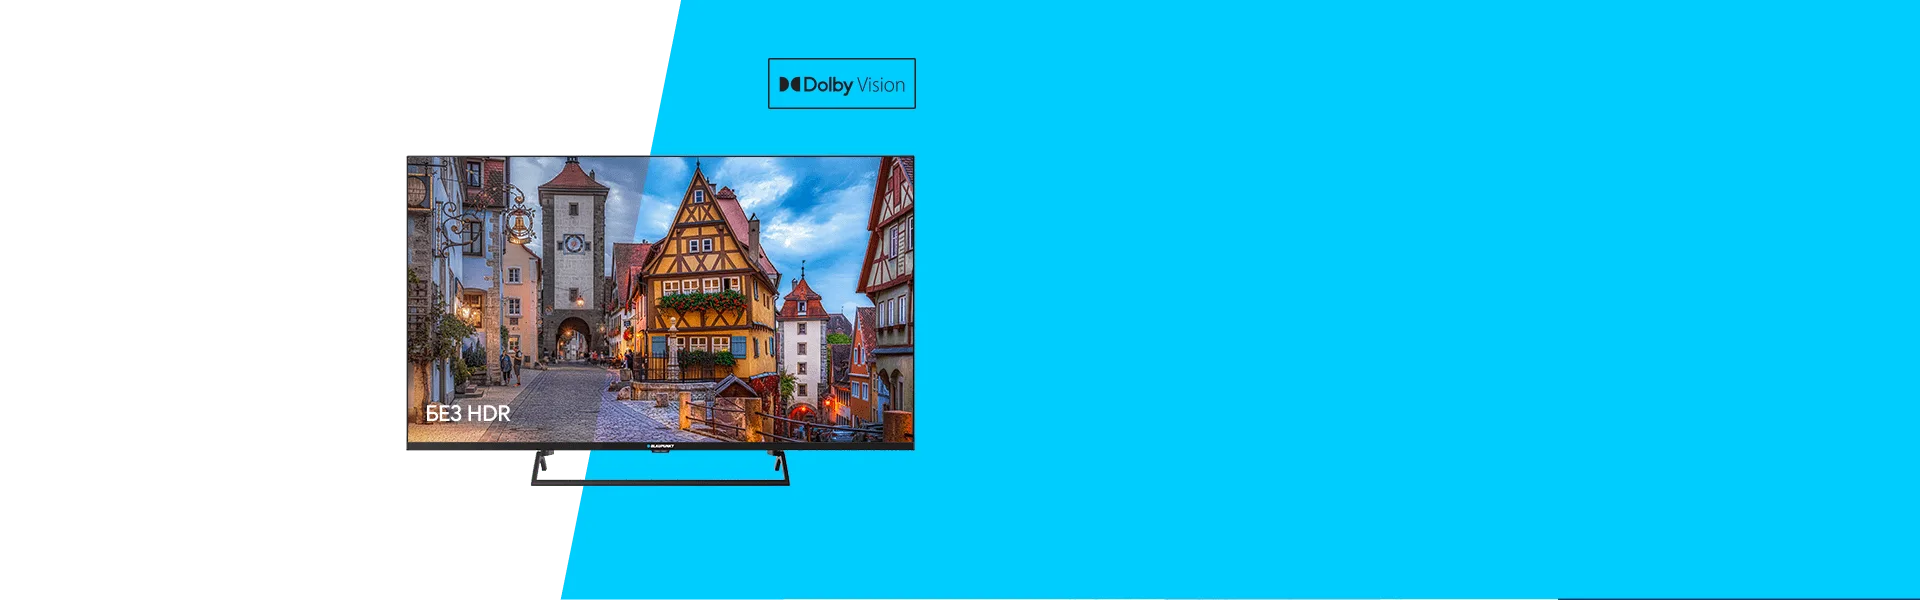 Телевизор UHD 4K Smart TV LED Blaupunkt 43UB7000